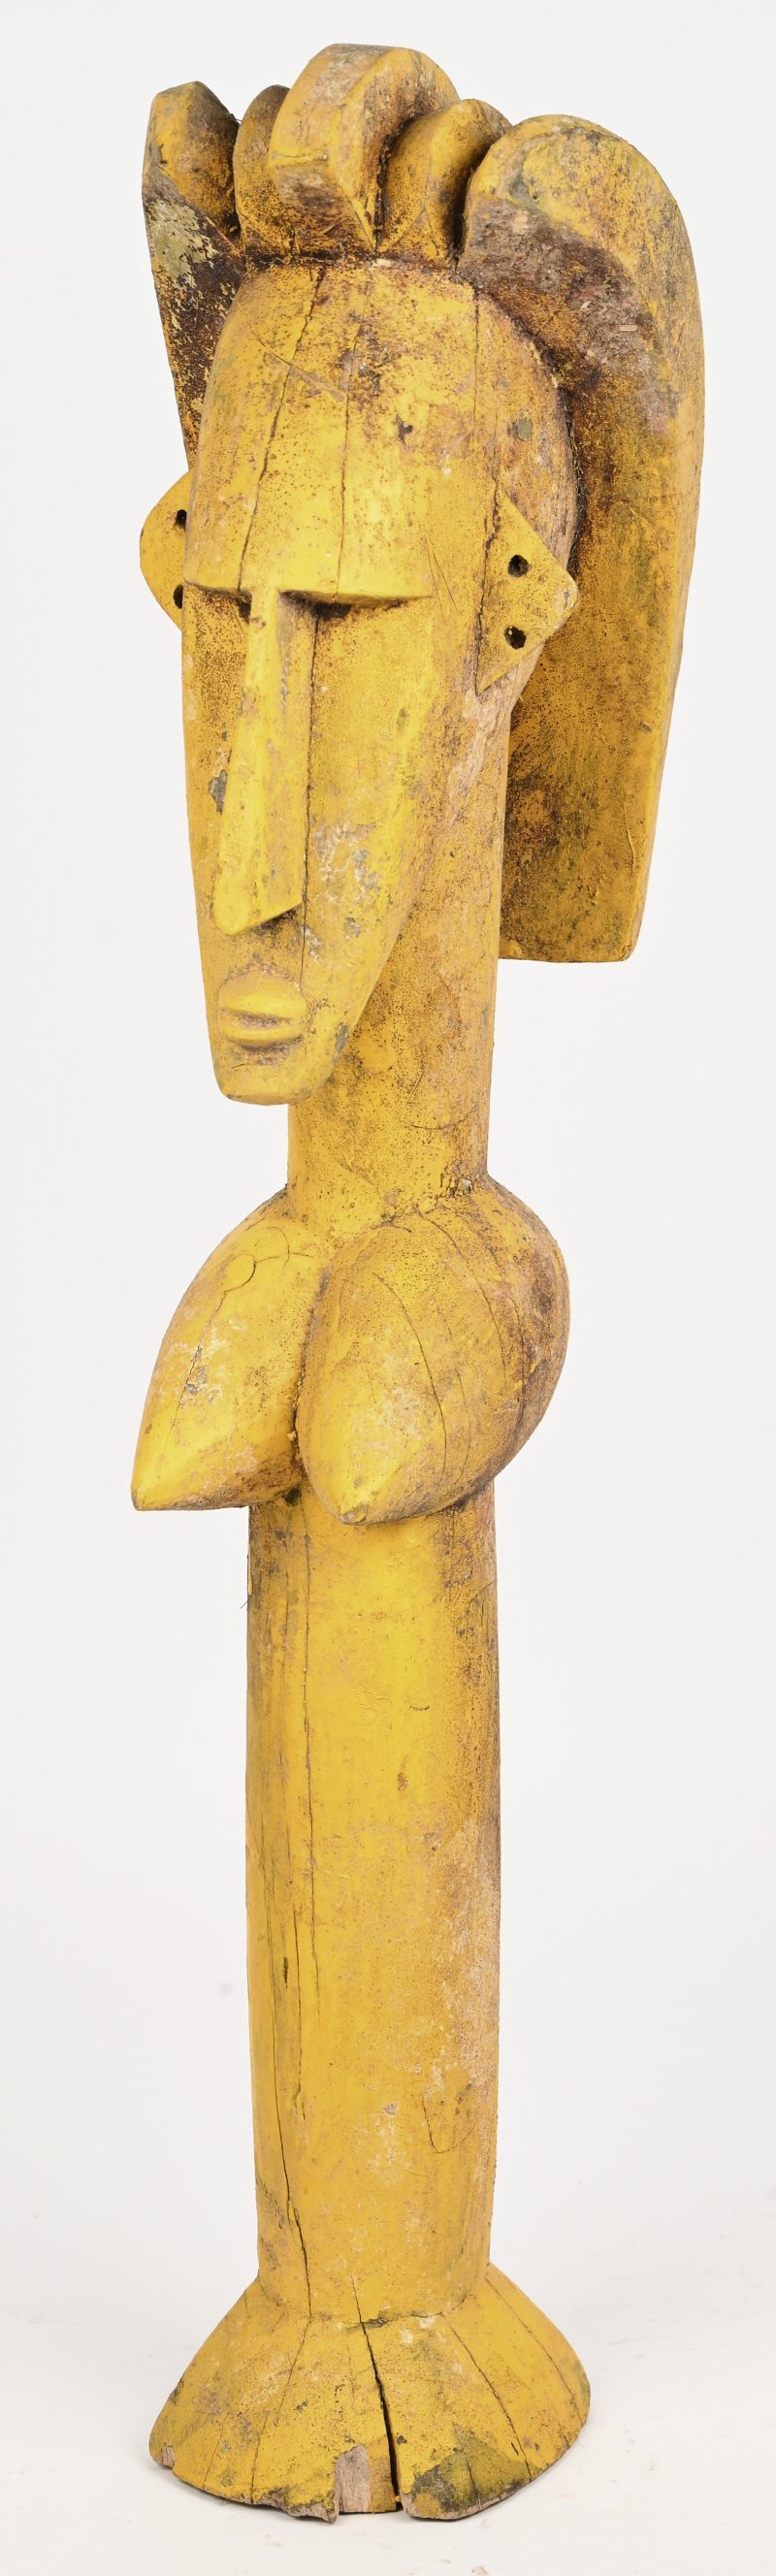 Een geel geschilderd beeld van een vrouw. West-Afrika.